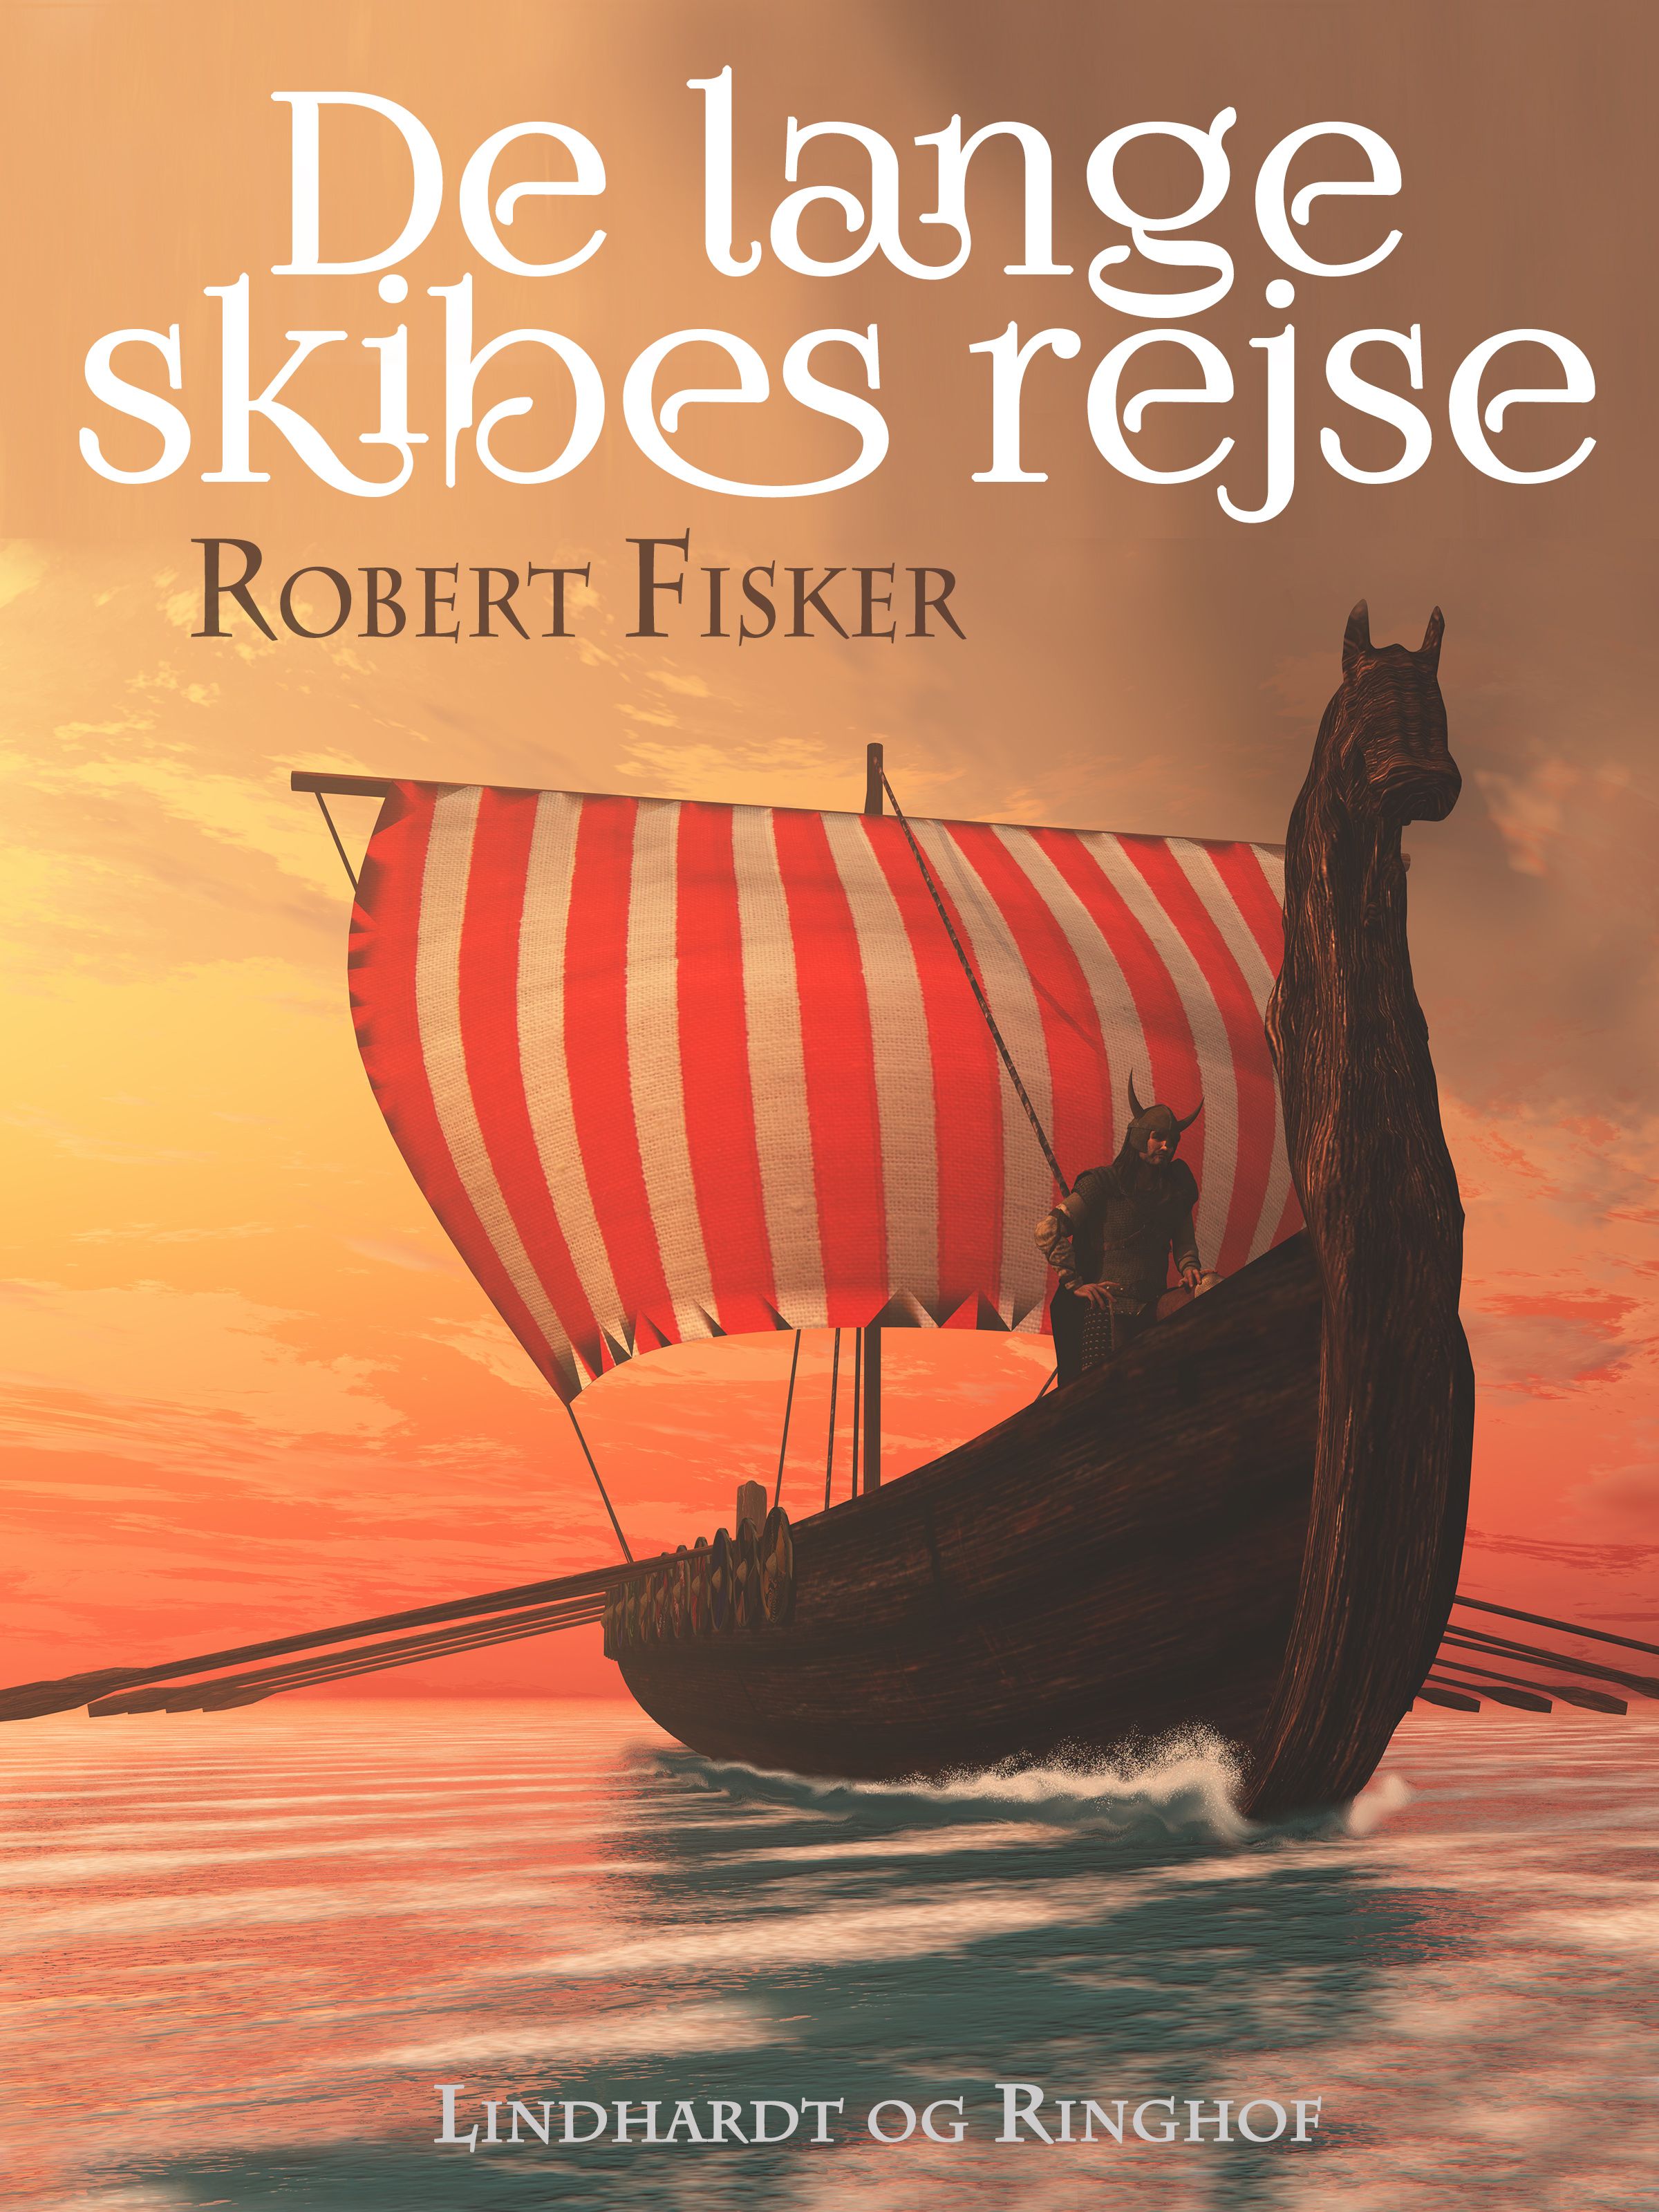 De lange skibes rejse, e-bok av Robert Fisker